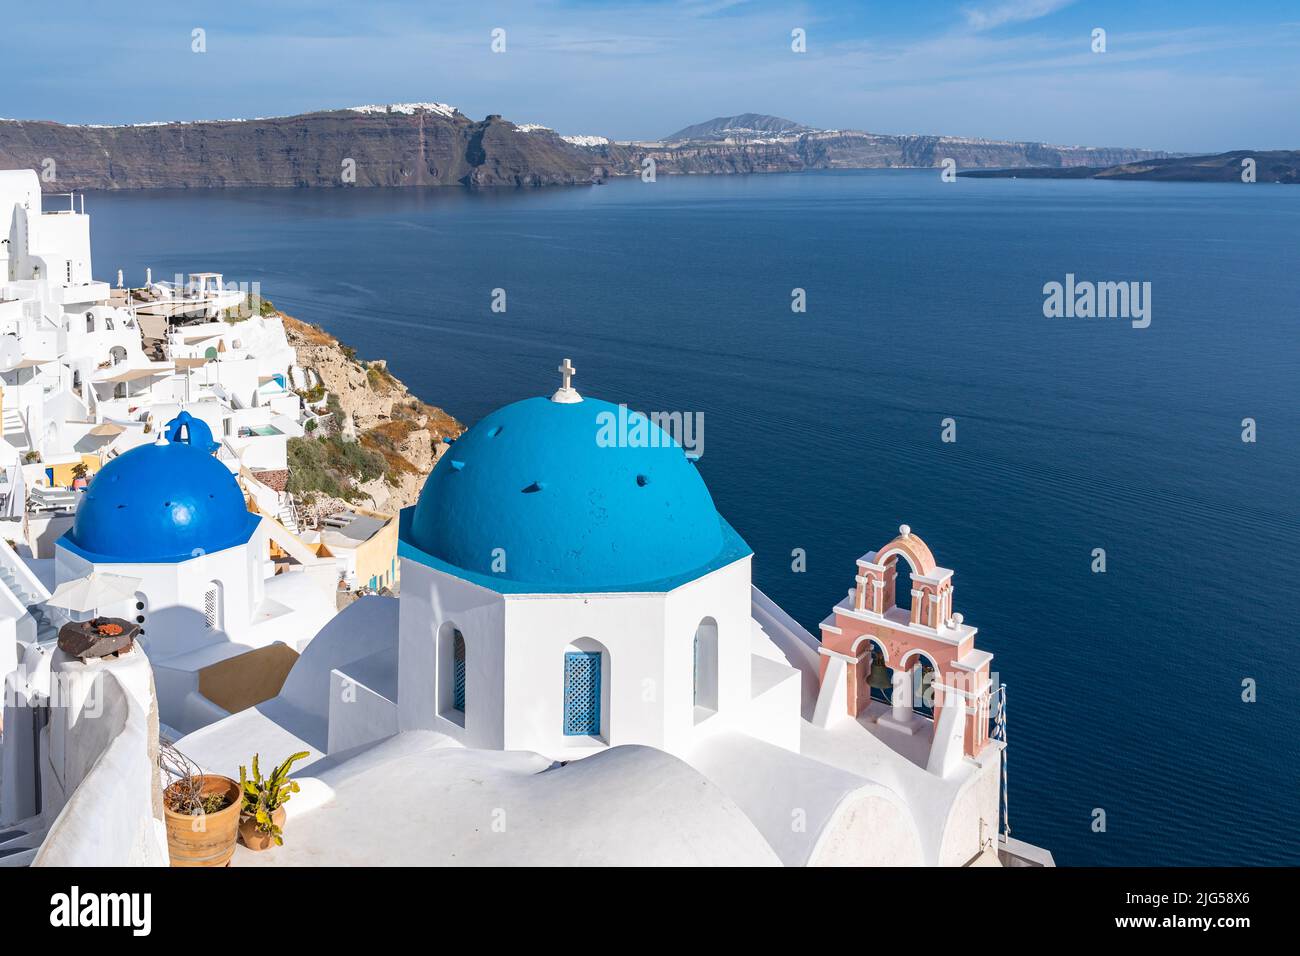 Famosa chiesa a cupola blu a Oia, Santorini, che offre un bel panorama sul mare e la caldera, Grecia Foto Stock